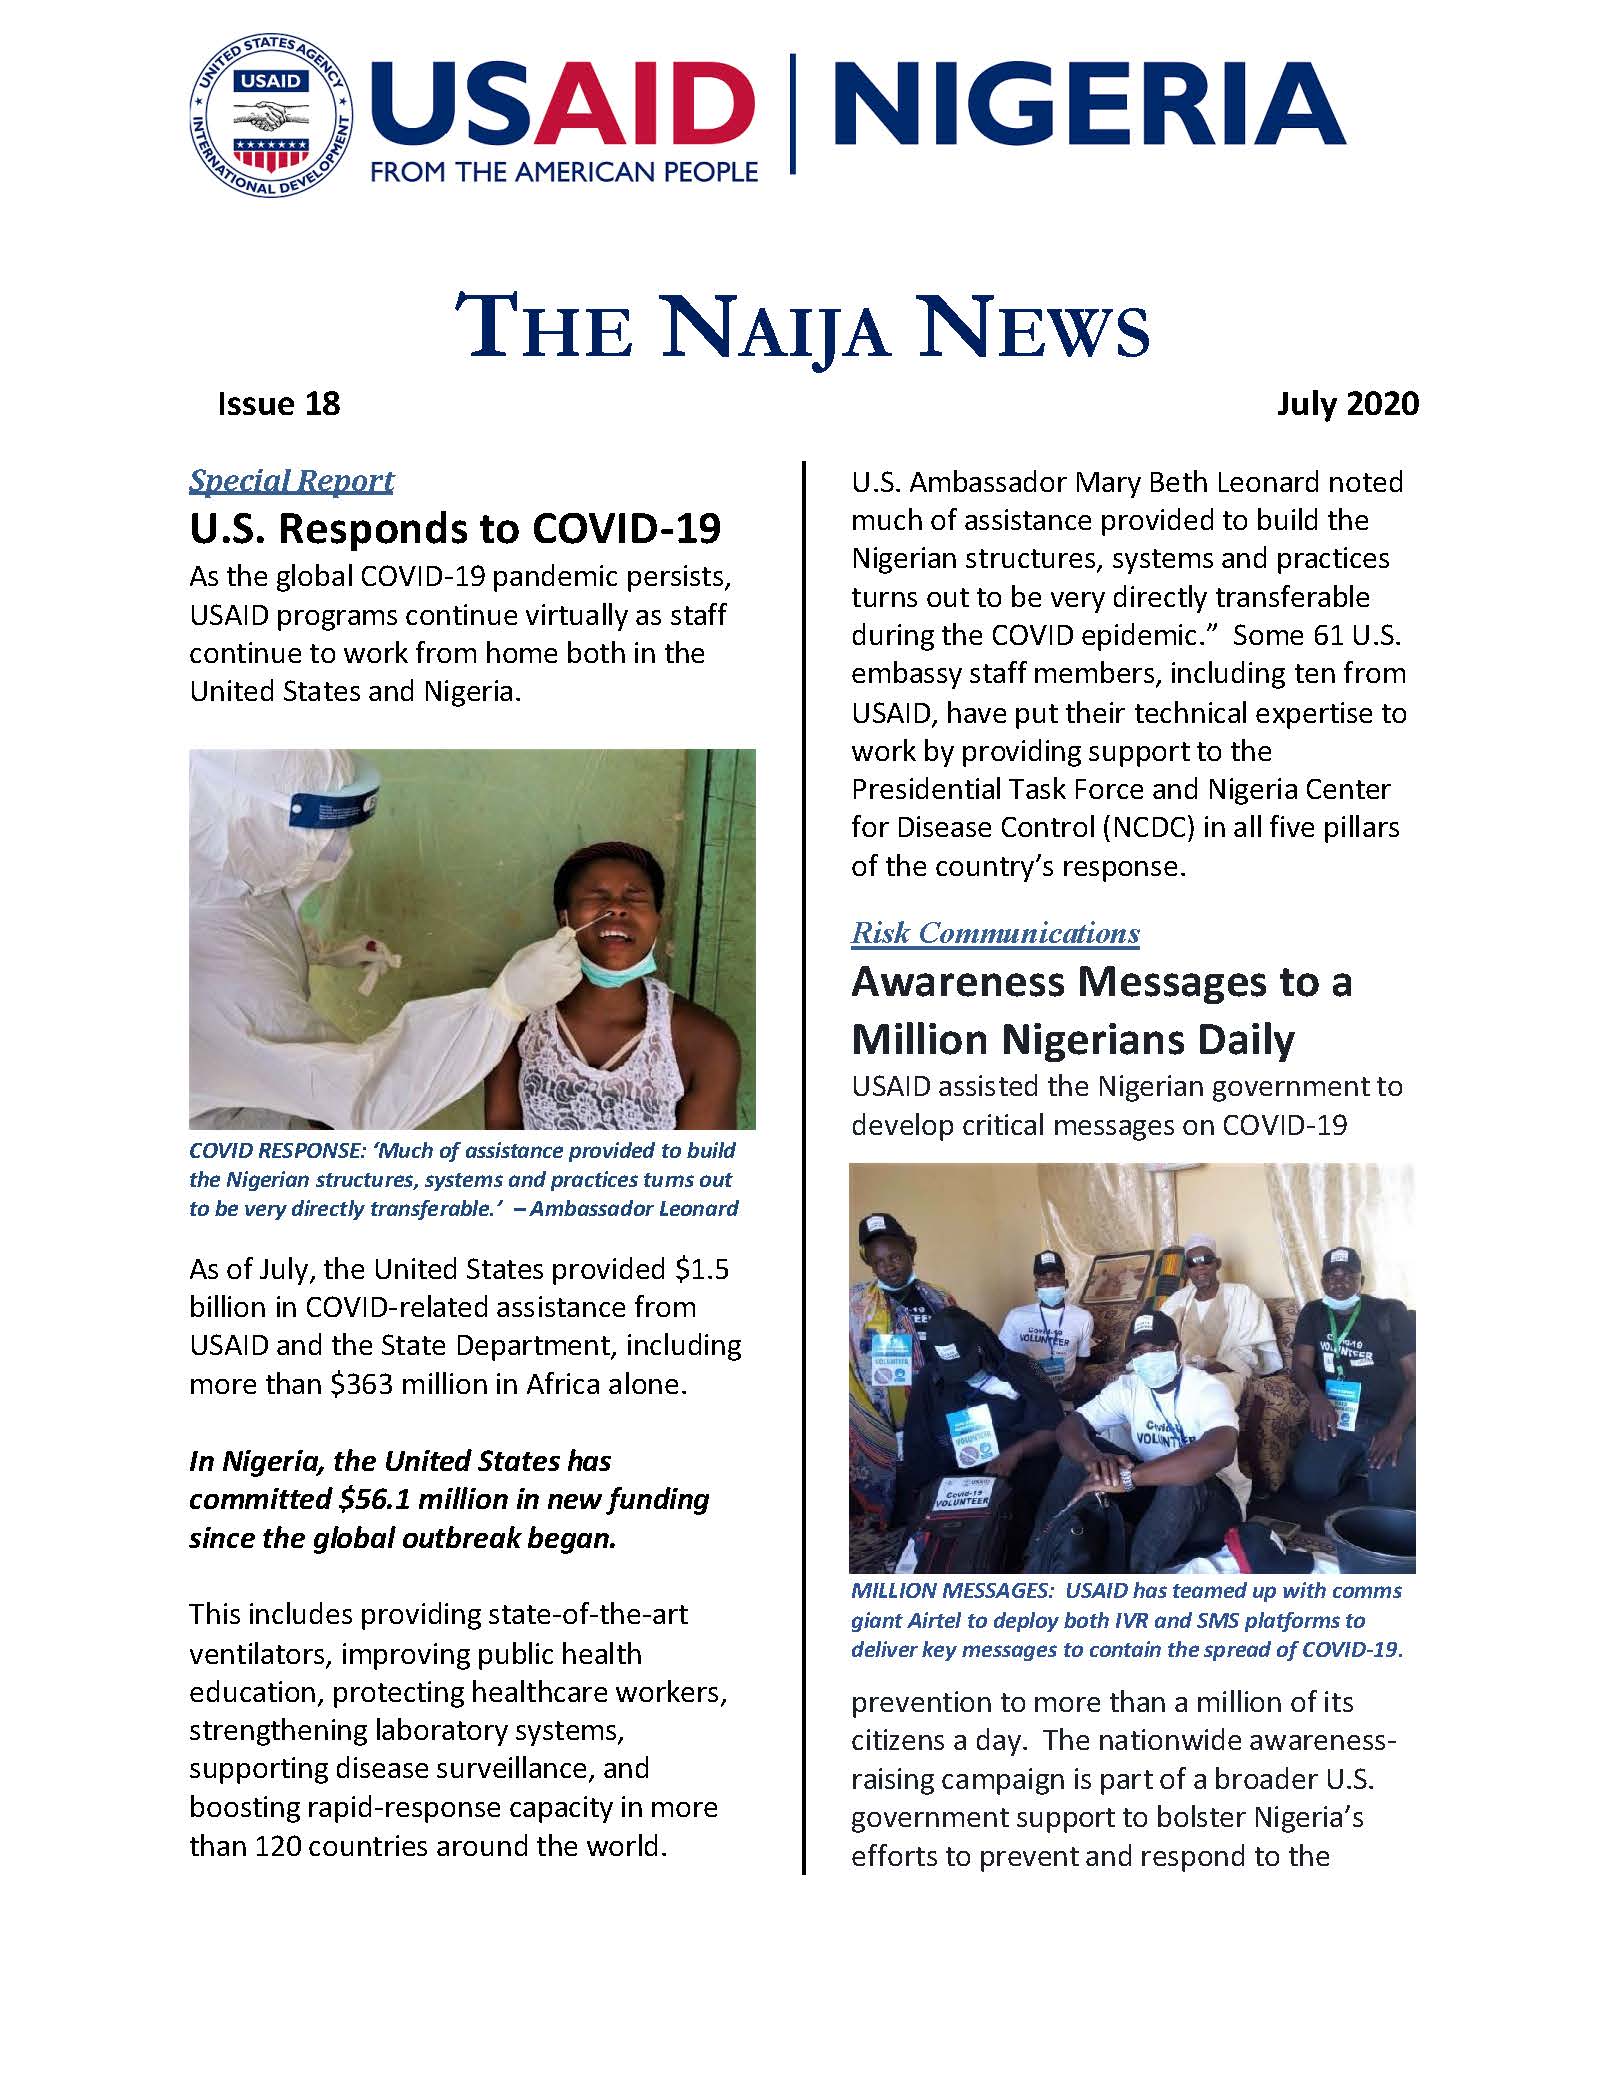 USAID Nigeiria The Naija News